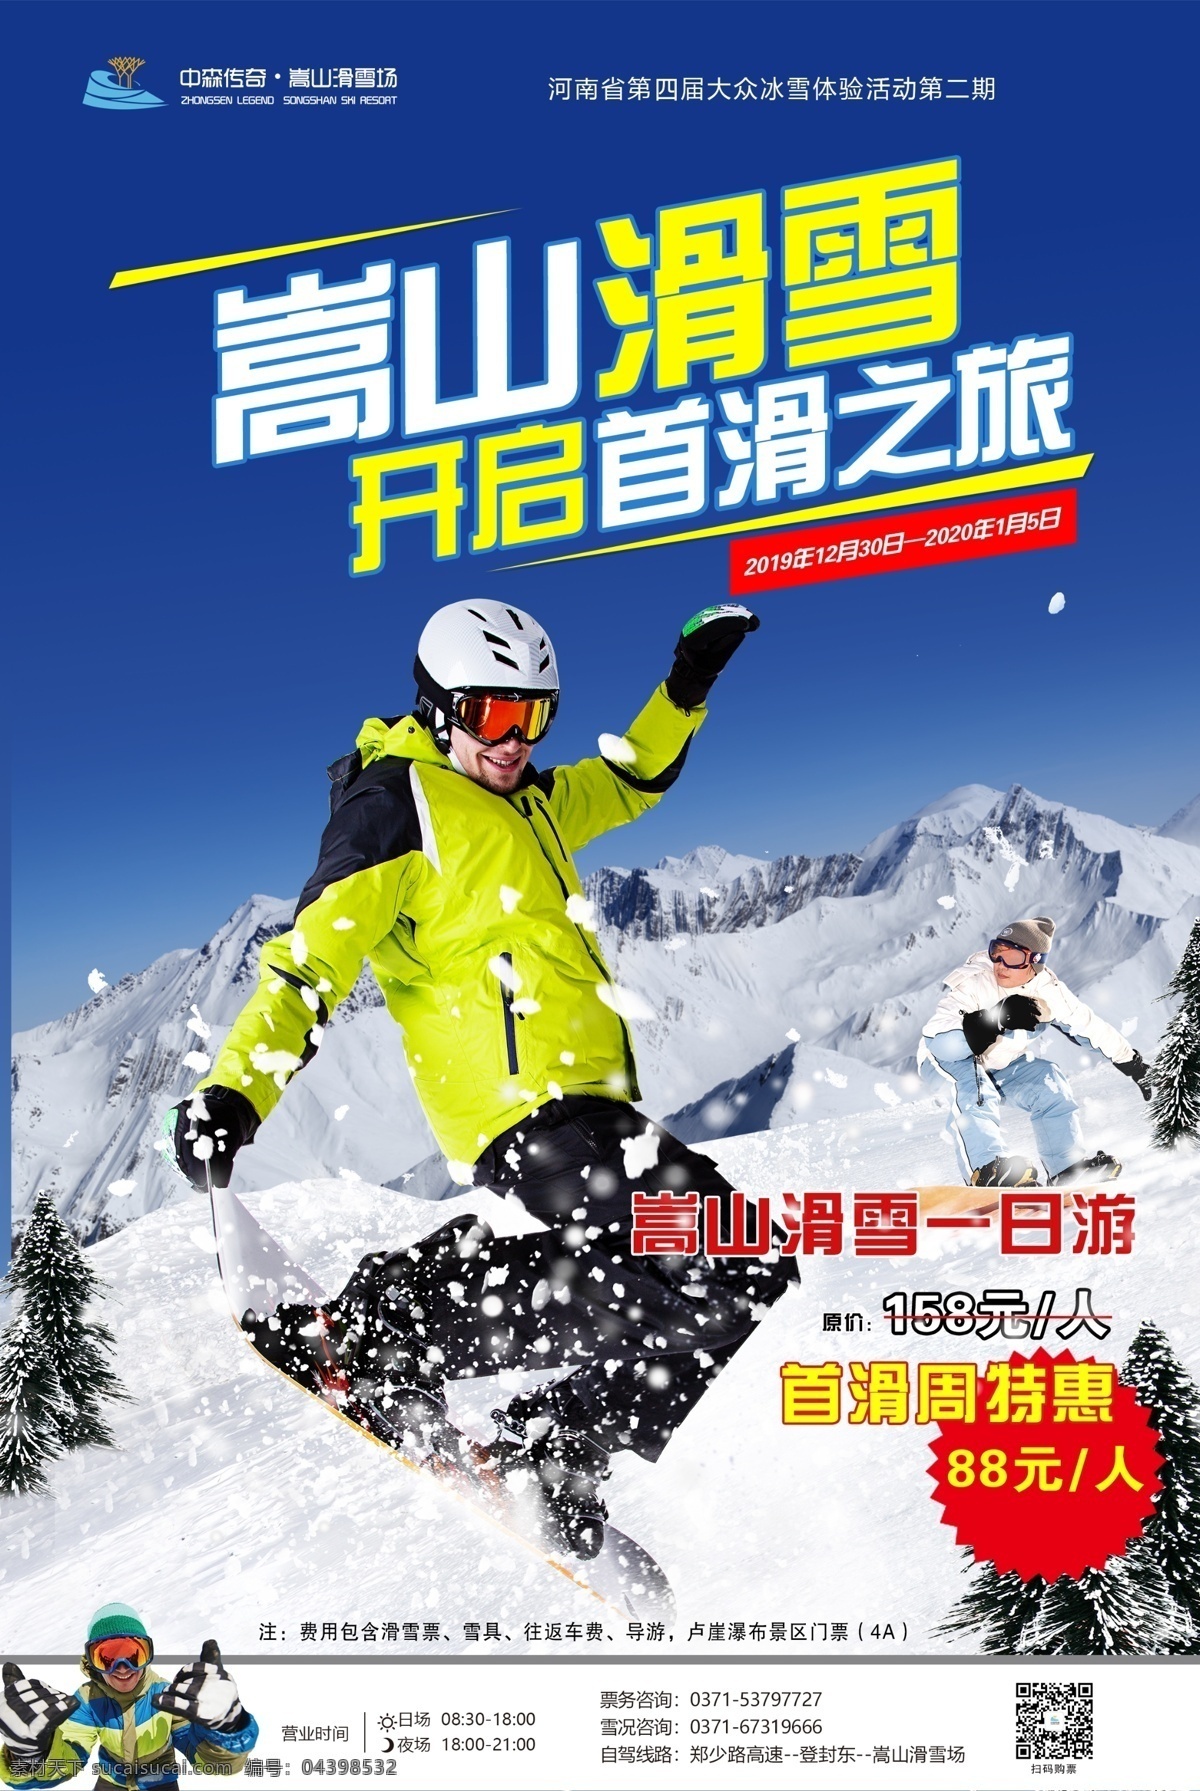 嵩山滑雪 滑雪 首滑 滑雪不限时 滑雪海报